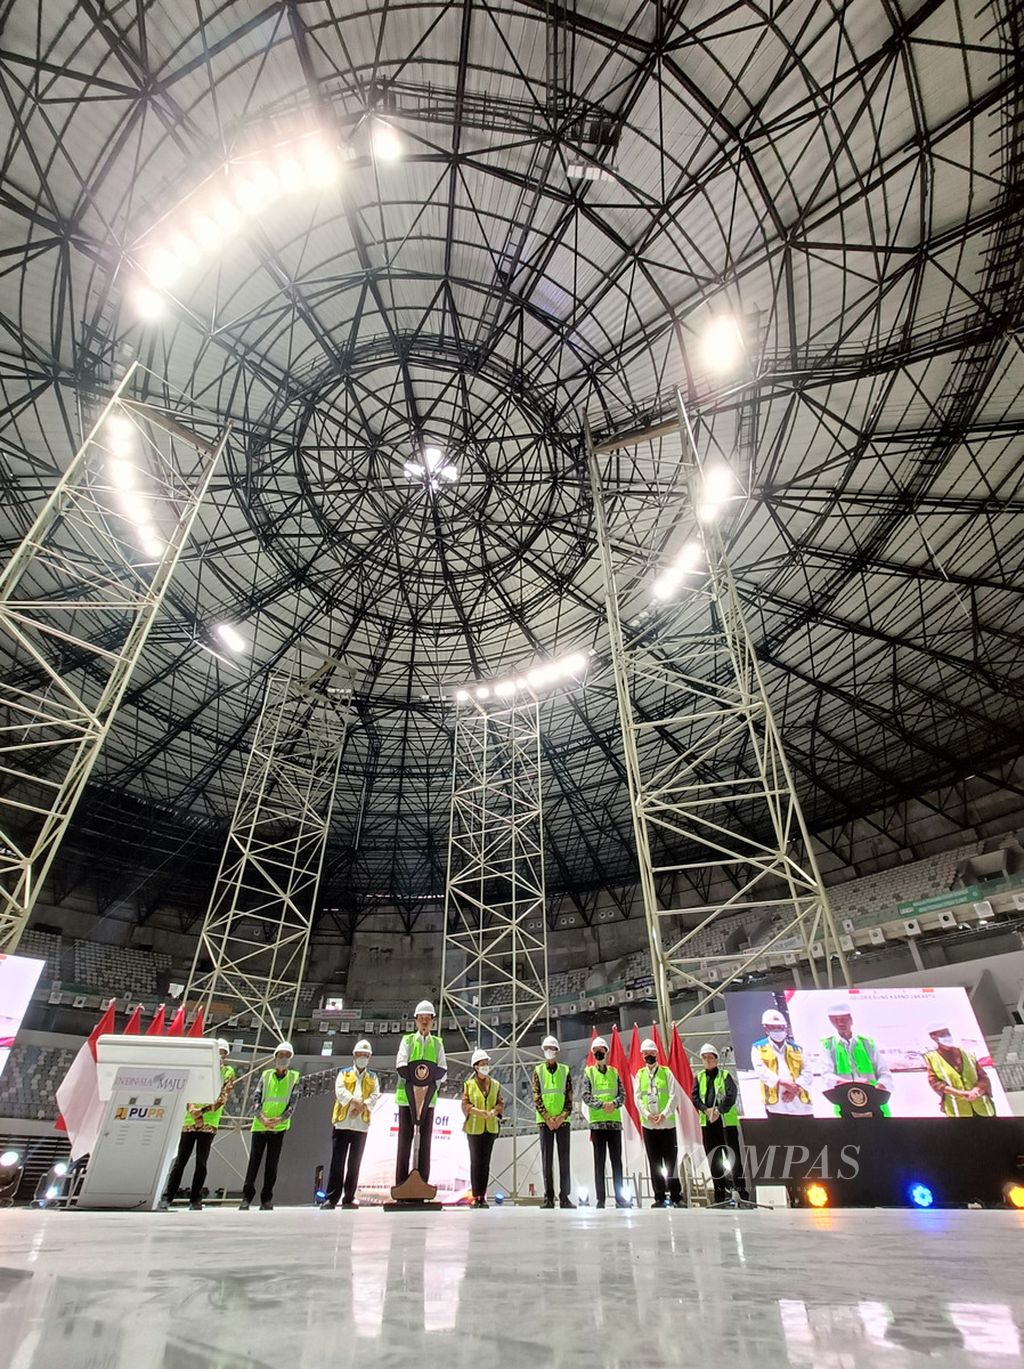 Presiden Joko Widodo didampingi sejumlah menteri saat melakukan Topping Off Indoor Multifunction Stadium (IMS) Gelora Bung Karno, Jakarta, Jumat (13/1/2023). IMS rencananya akan digunakan sebagai venue Piala Dunia FIBA 2023 (FIBA World Cup 2023) pada 25 Agustus - 10 September. Indonesia akan menjadi tuan rumah bersama Jepang dan Filipina. IMS memiliki kapasitas 16.253 tempat duduk. Tempat ini bisa berfungsi untuk event-event olahraga seperti basket, badminton, futsal, voli, dan juga bisa dipakai untuk festival budaya dan seni pertunjukan serta konser-konser musik dengan kapasitas yang sangat besar. 